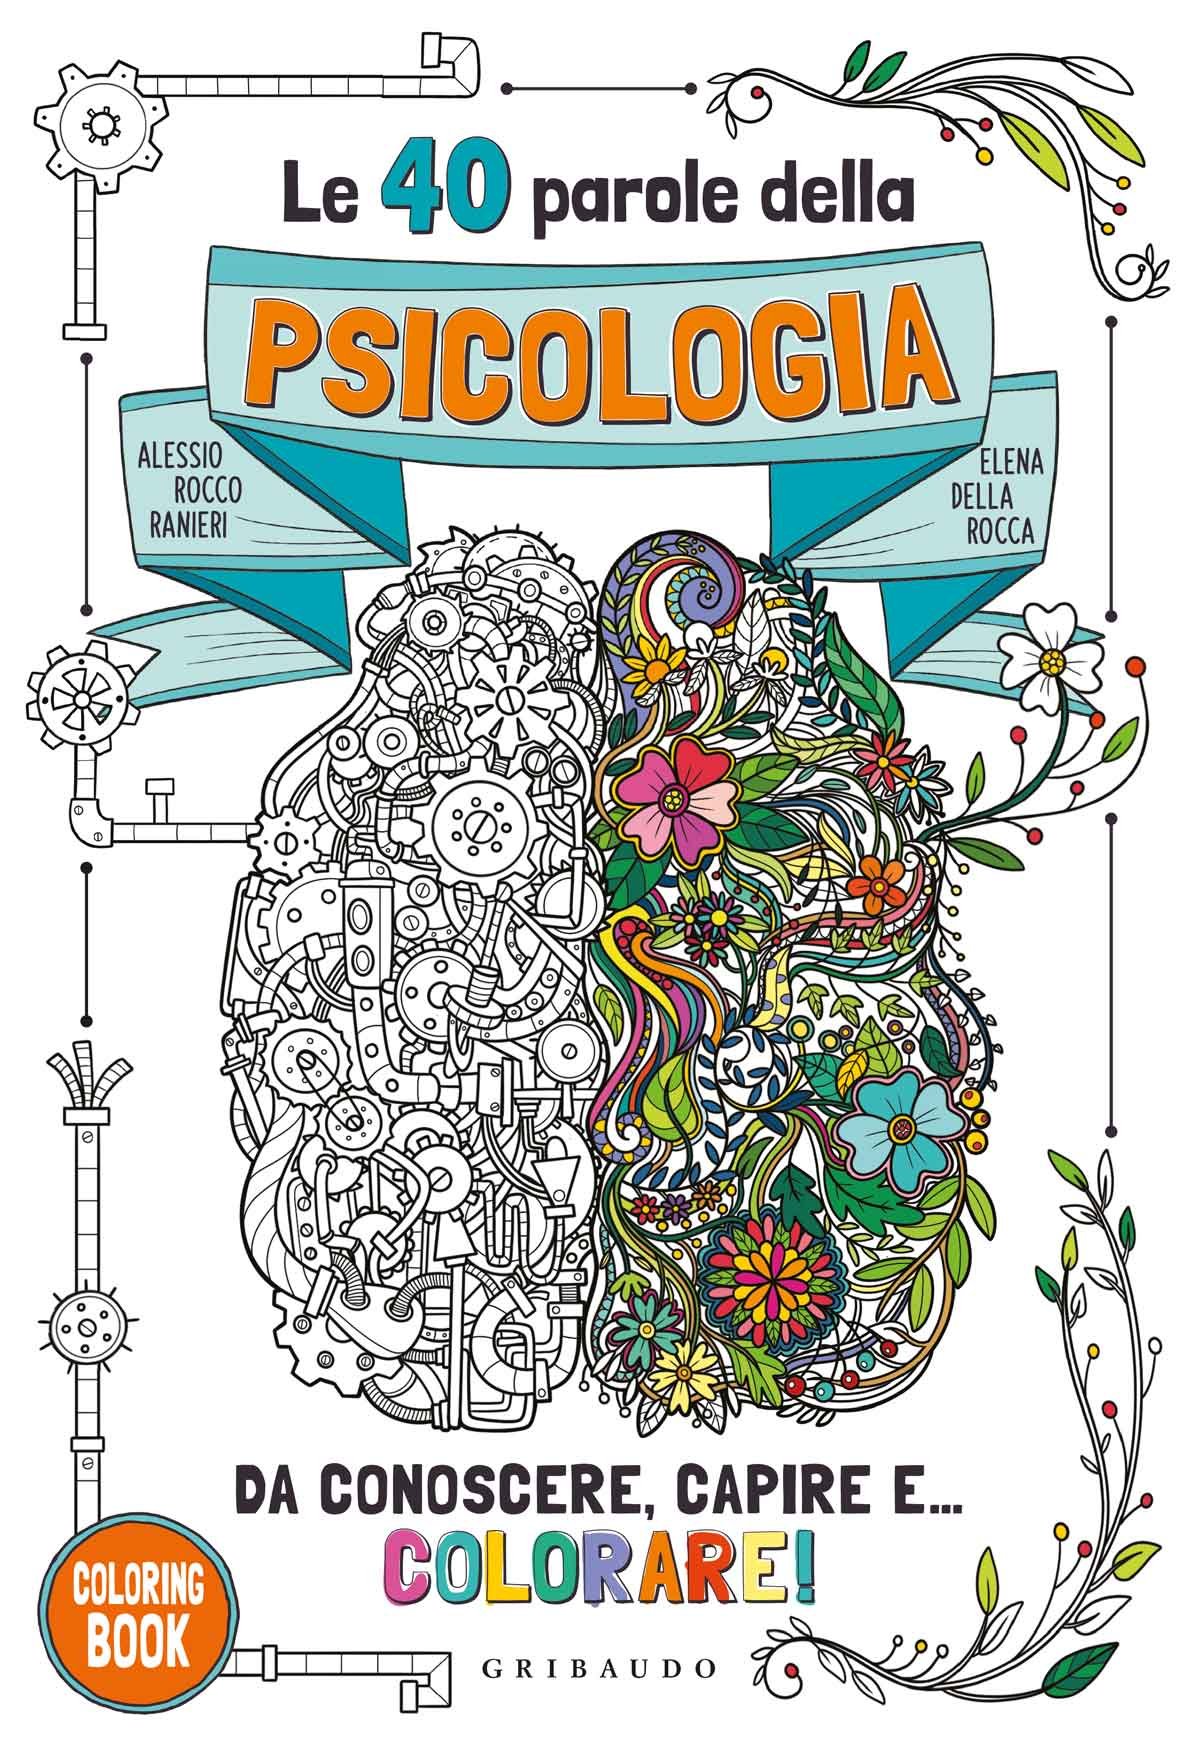 Le 40 parole della psicologia da conoscere, capire e...colorare!